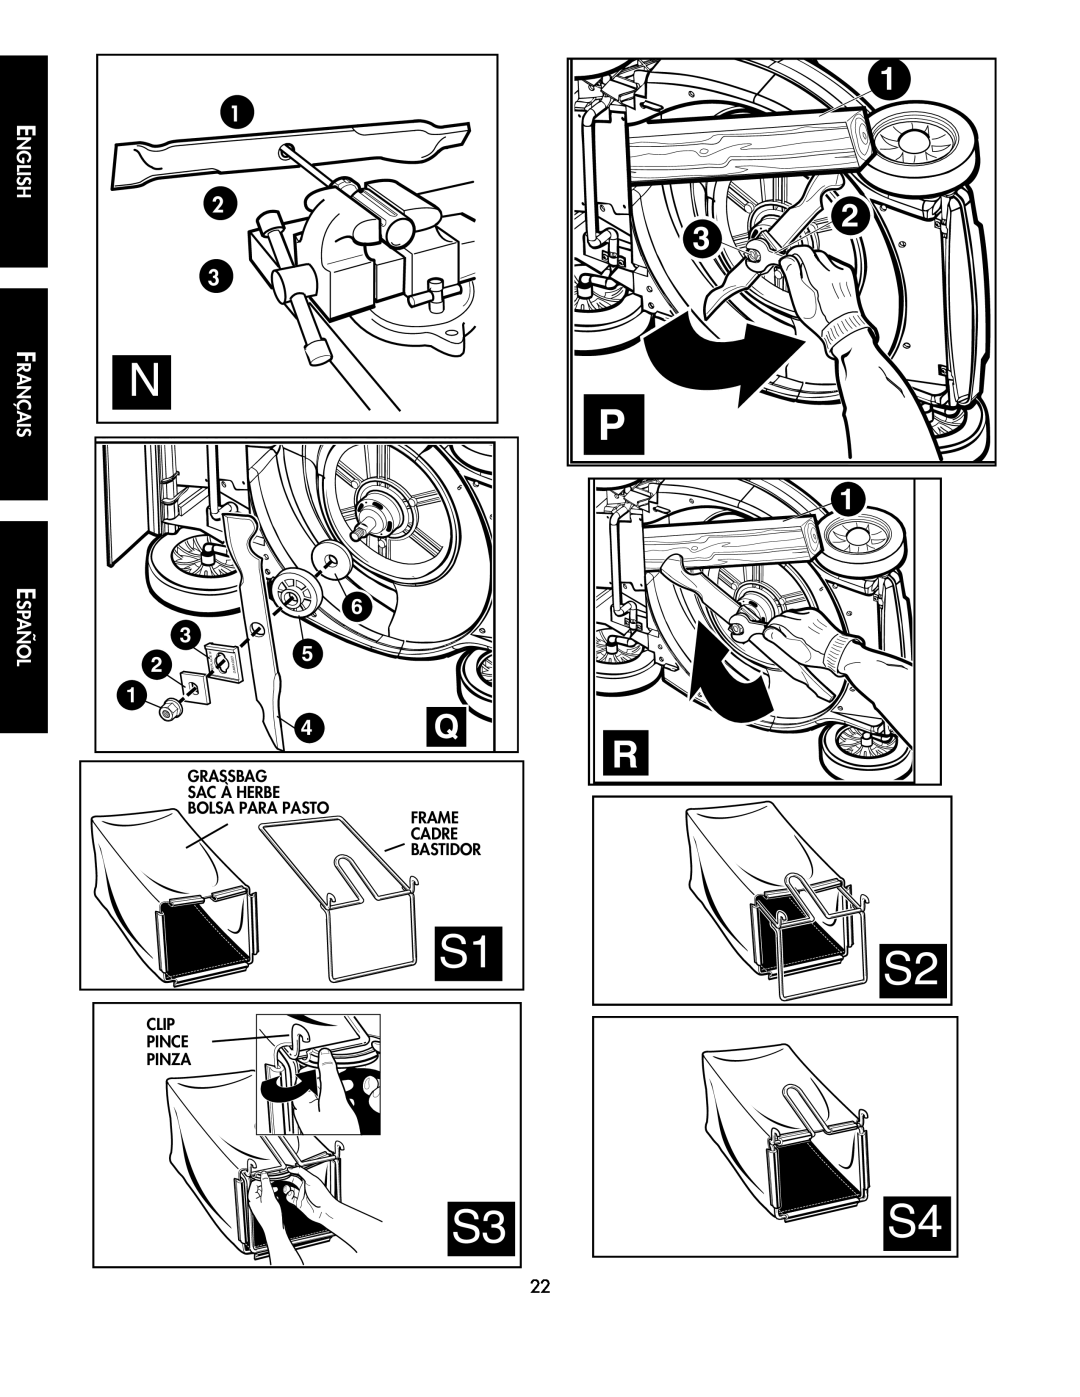 Black & Decker CMM1000 instruction manual Français, English, Español, Replace, Sac À Herbe Bolsa Para Pasto, Frame Cadre 